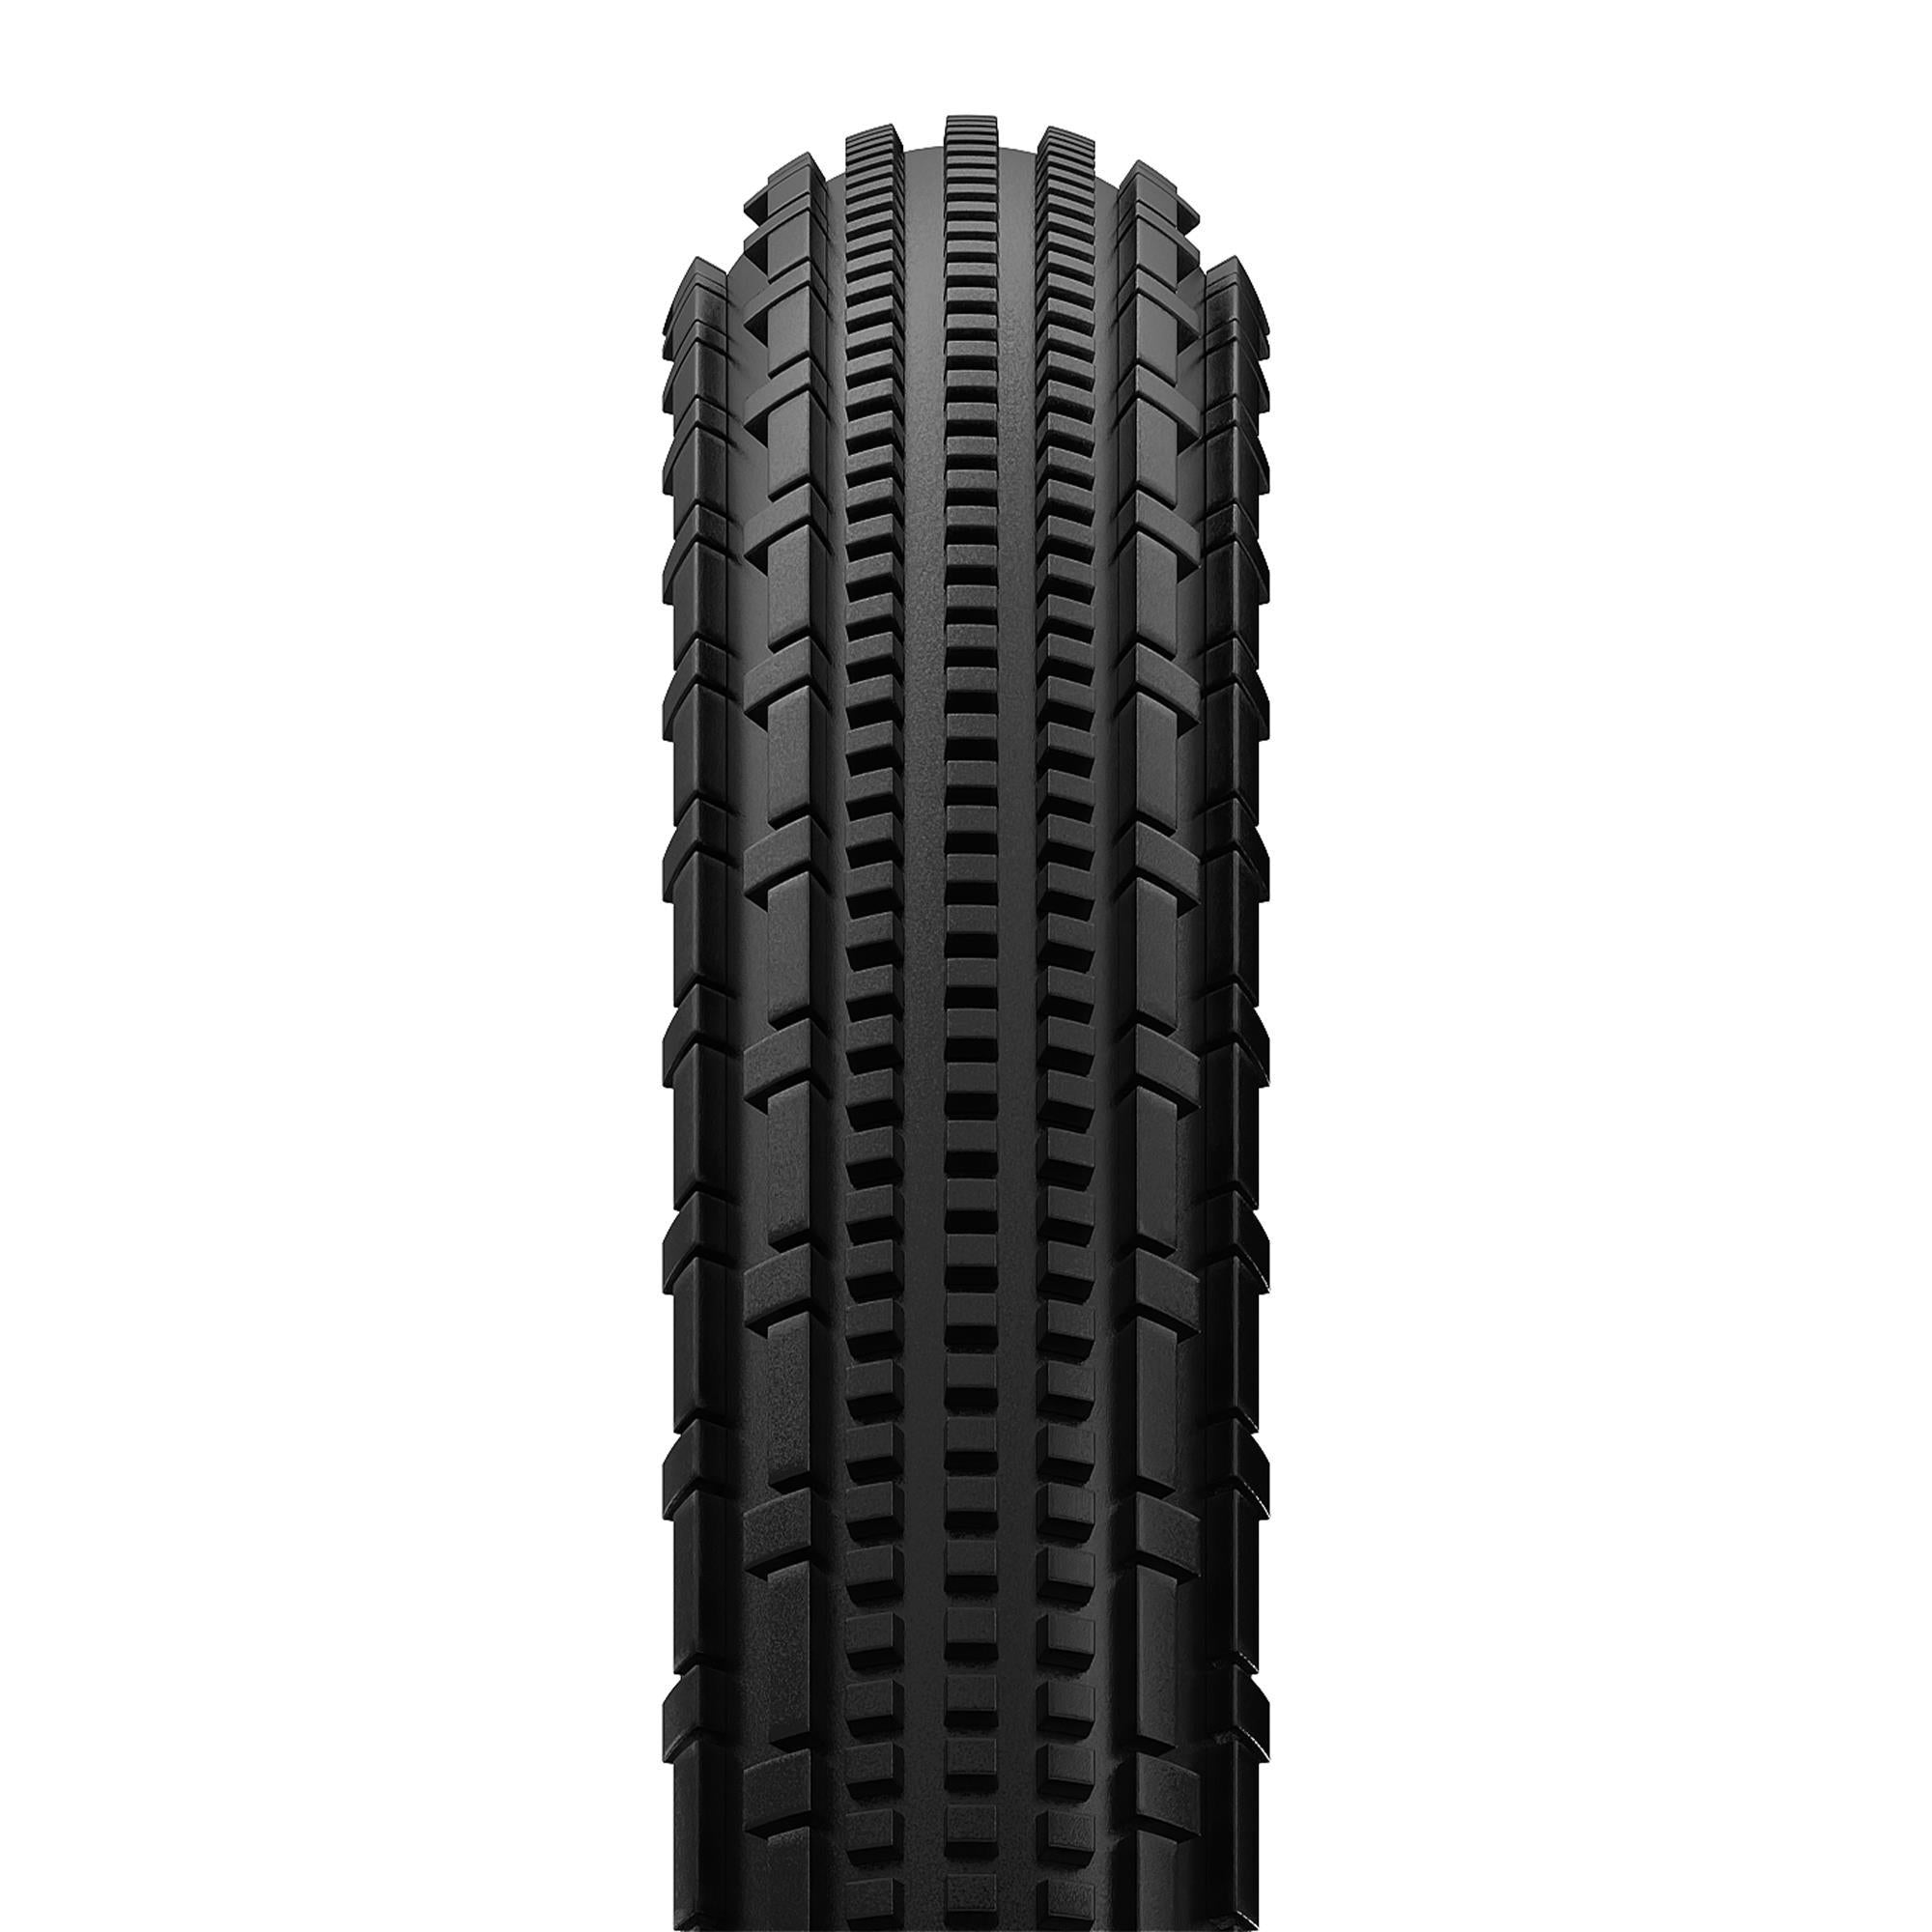 GravelKing SK R-Line TLR Gravel Tyre